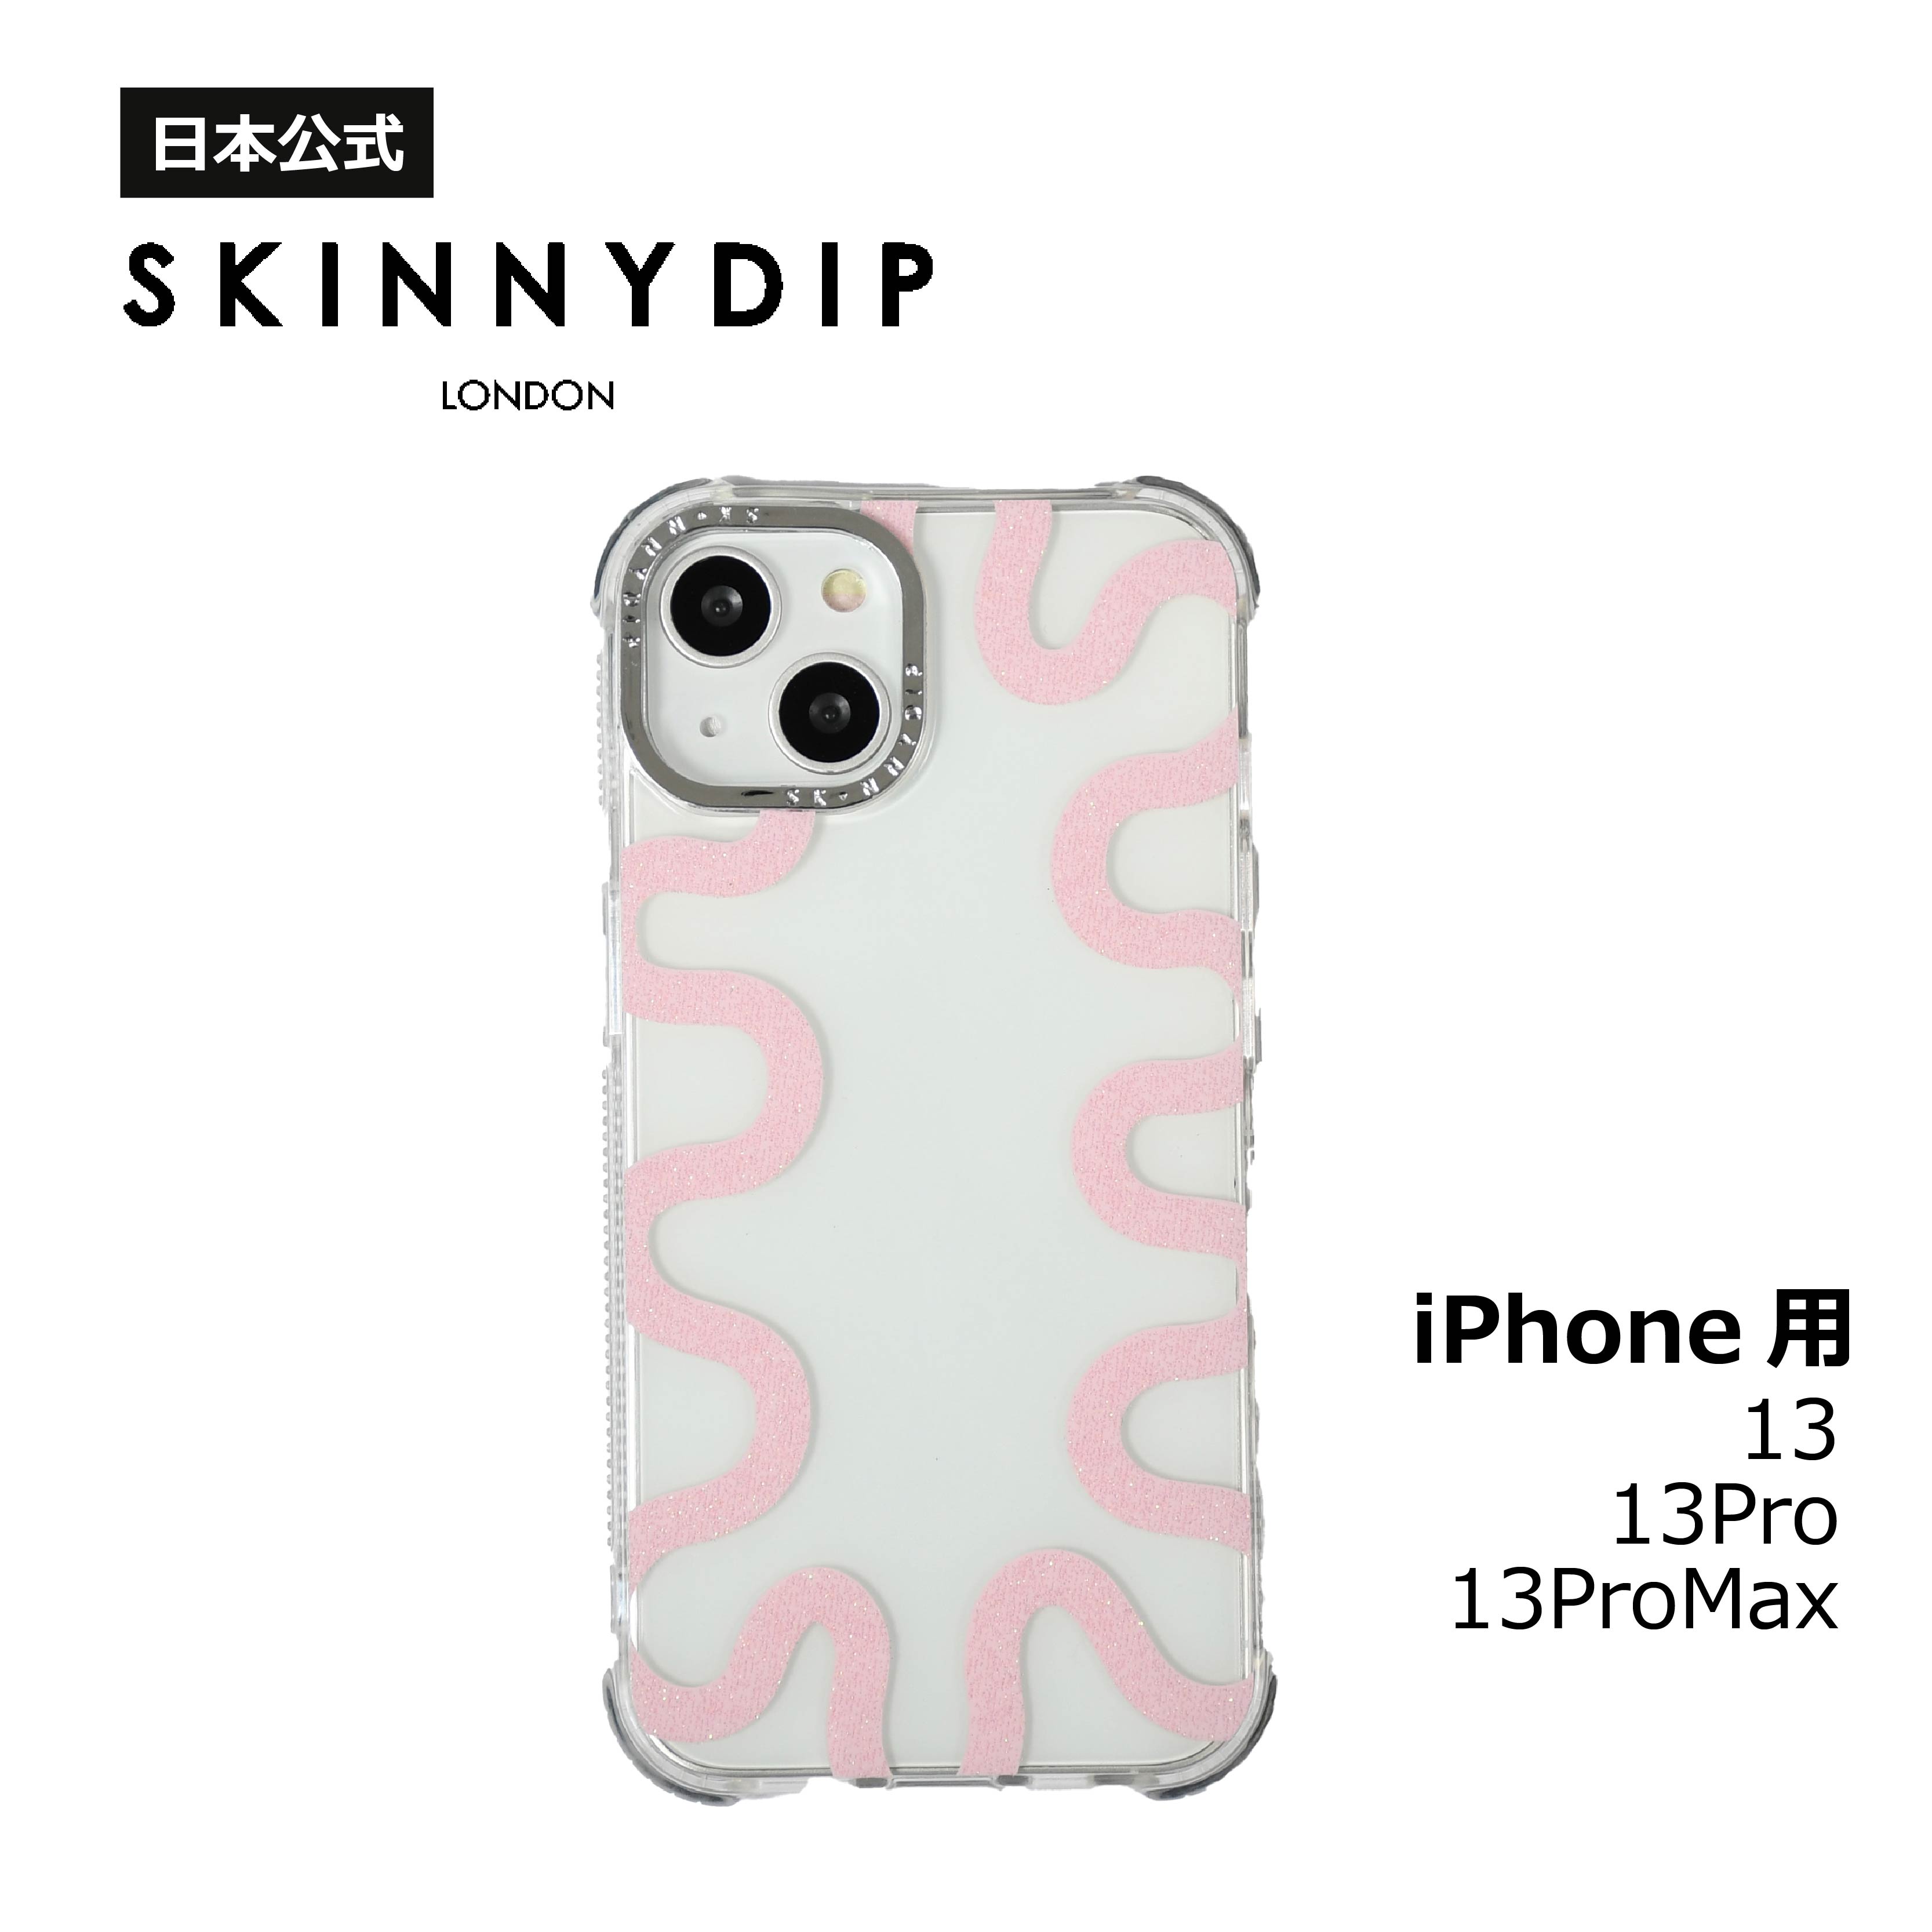 【公式】SKINNYDIP iPhone用ケース ピンクスクイグル iPhone13 iPhone13Pro iPhone13ProMaX アイフォンケース 耐衝撃性ケース